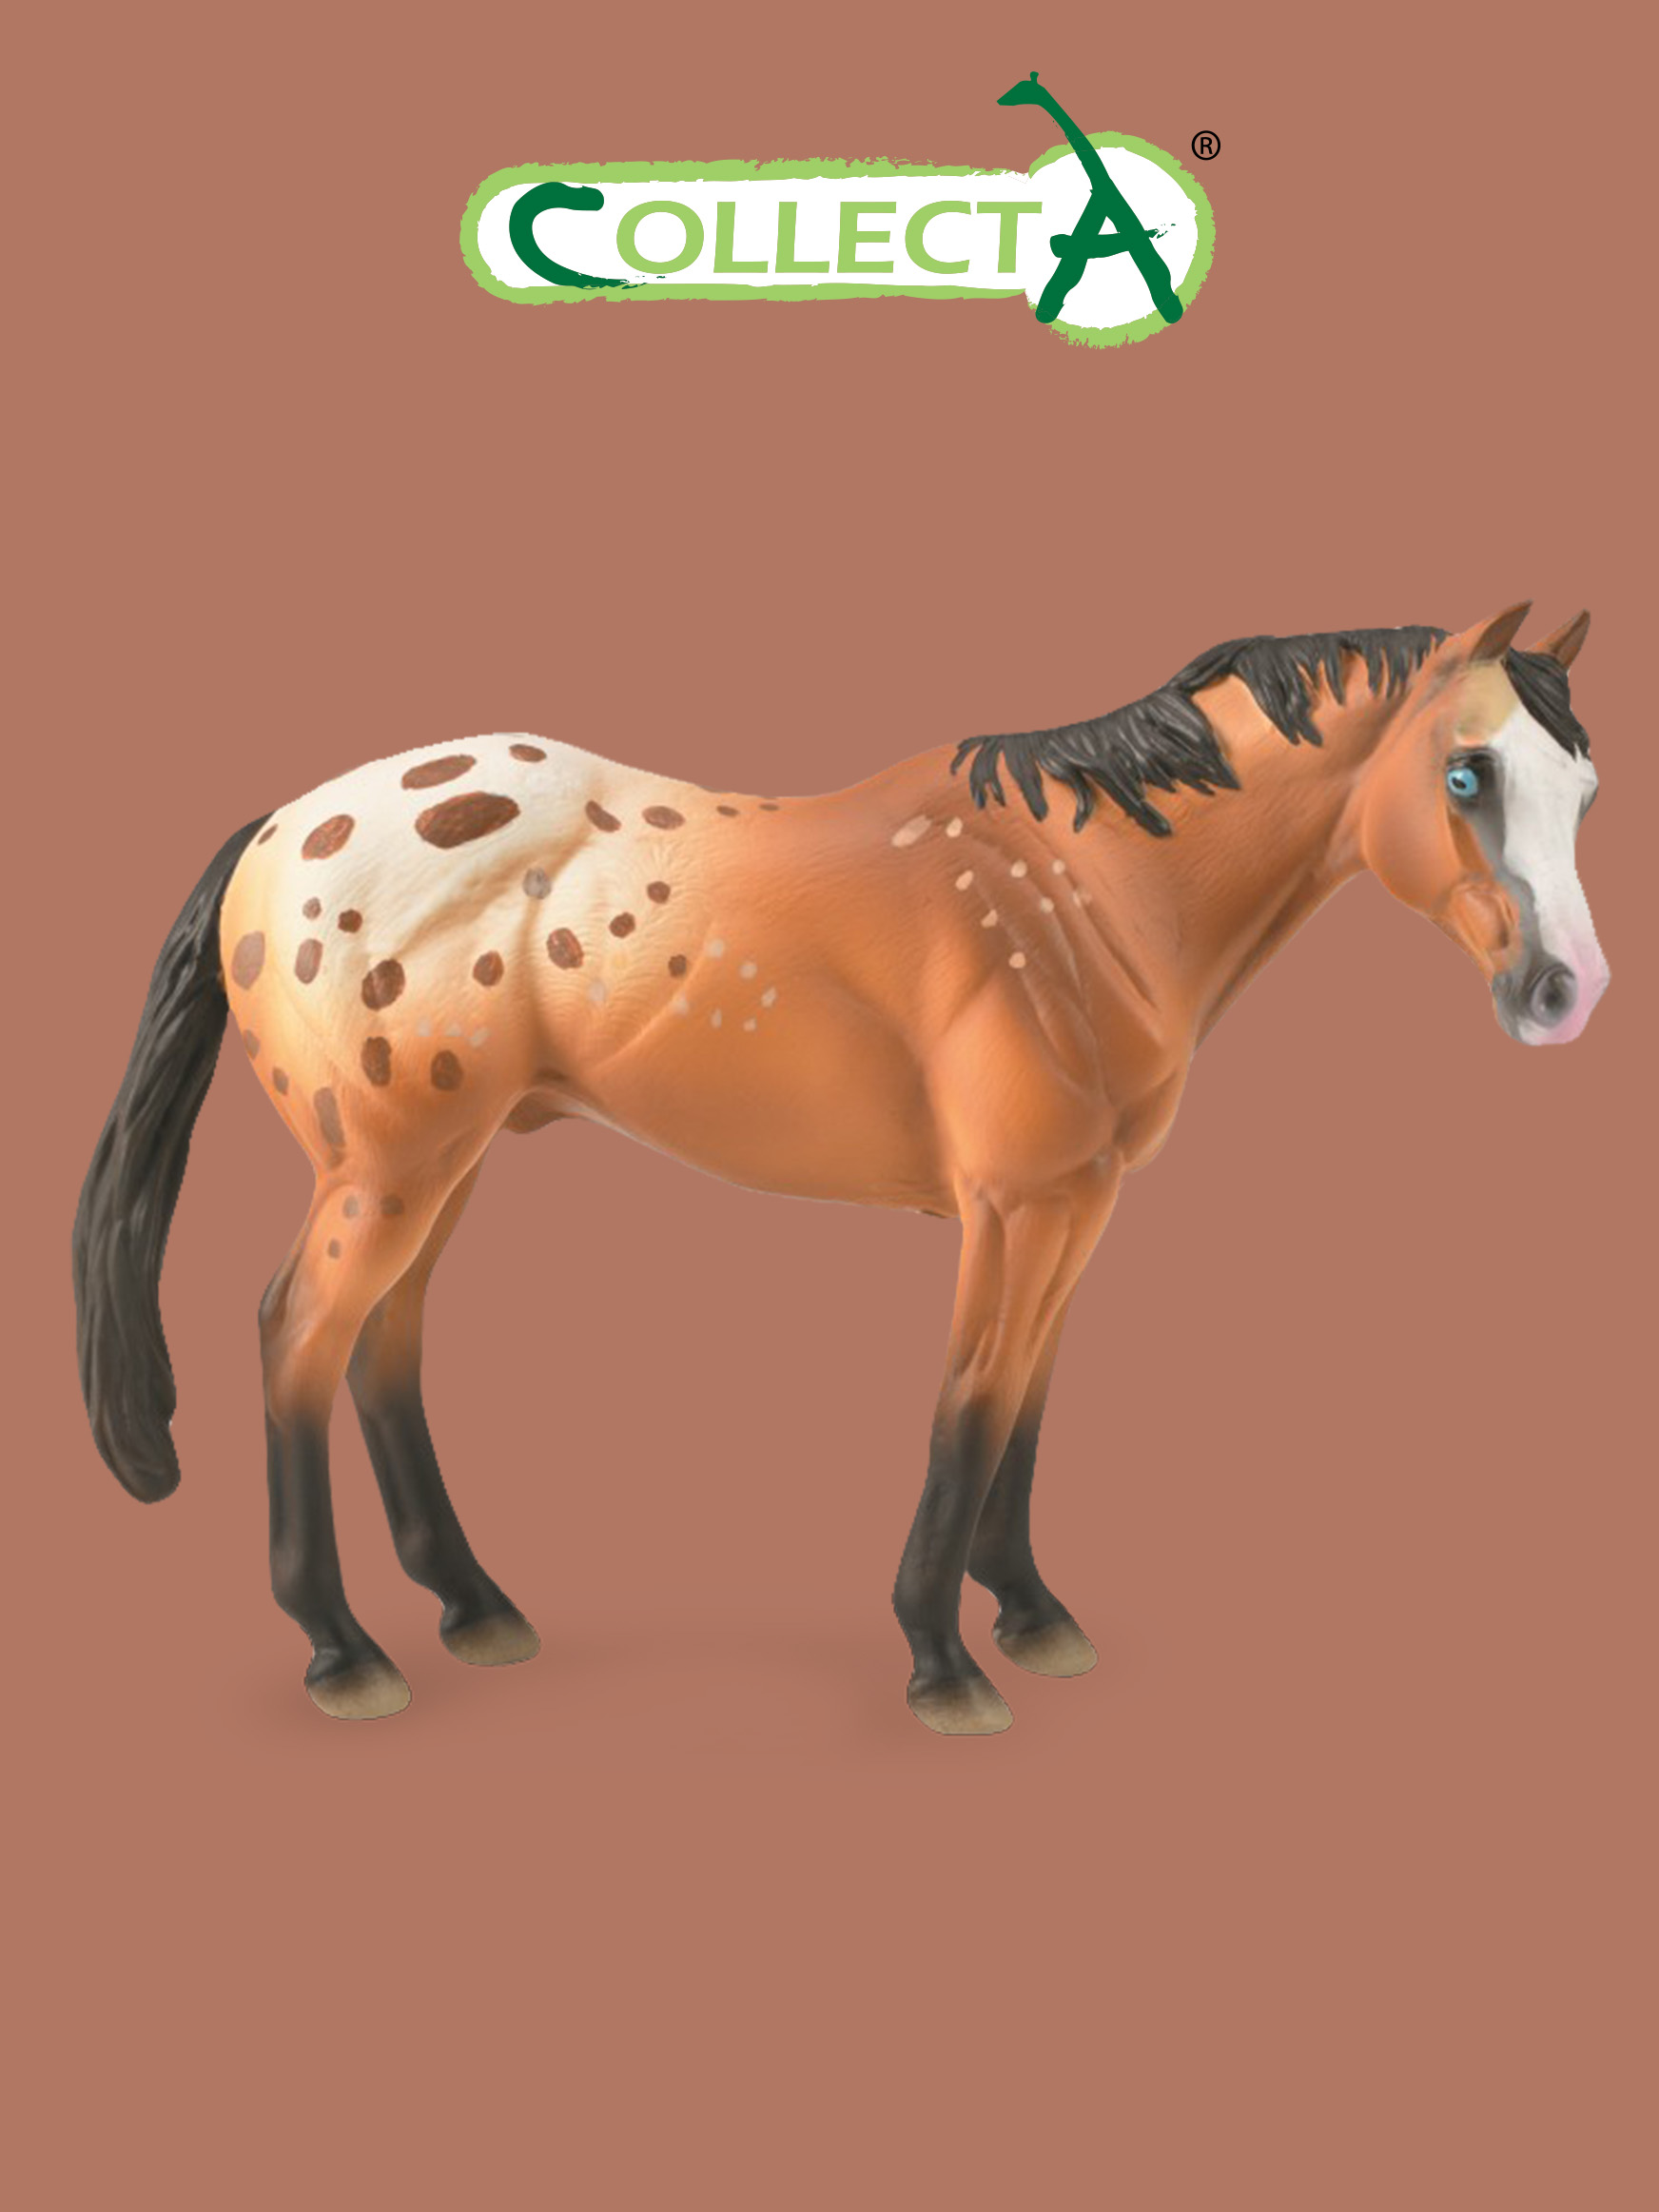 Фигурка Collecta животного Лошадь Светло-коричневый жеребец Аппалузы жеребец морган фигурка лошади